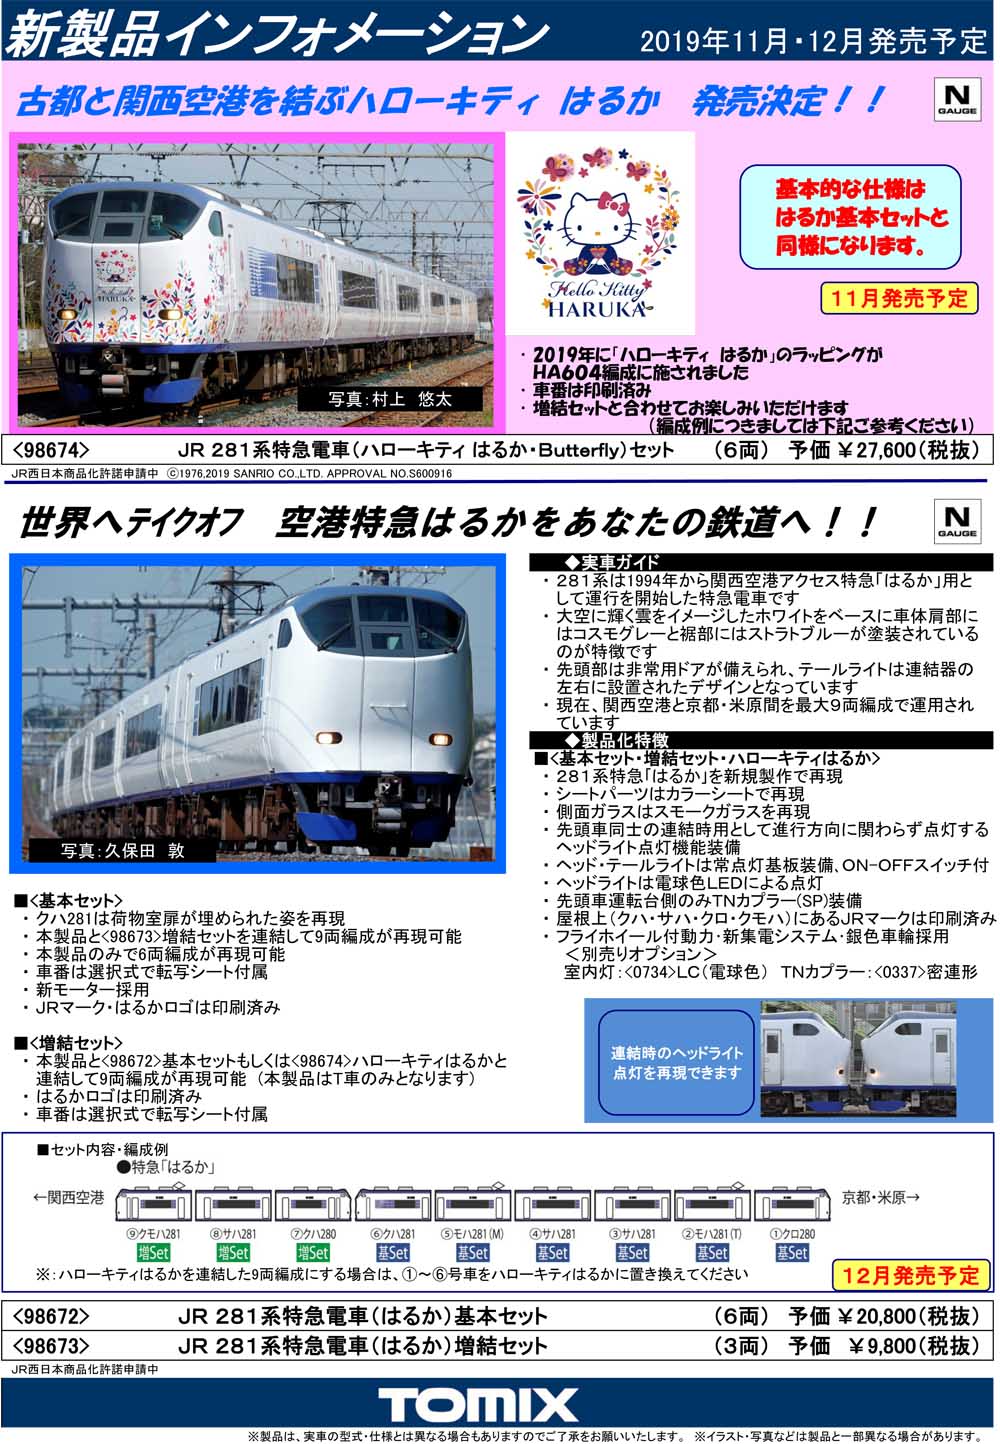 【新品100%新品】Nゲージ TOMIX 98672 JR 281系特急電車(はるか)基本セット 特急形電車